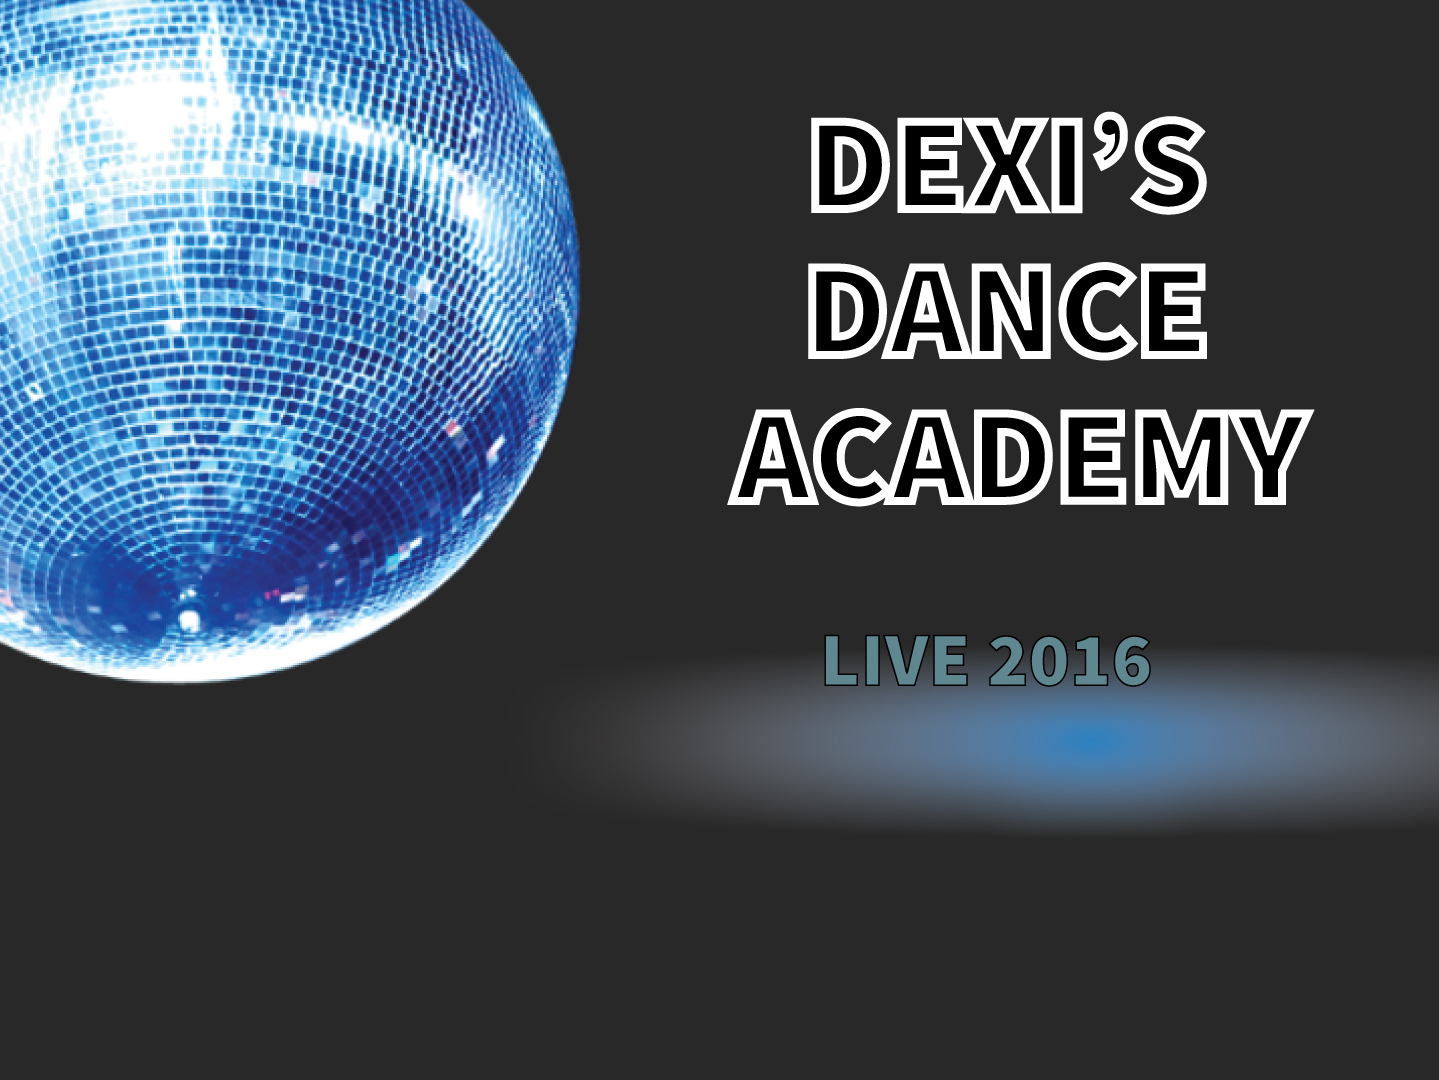 Live 2016 - Dexi's Dance Academy